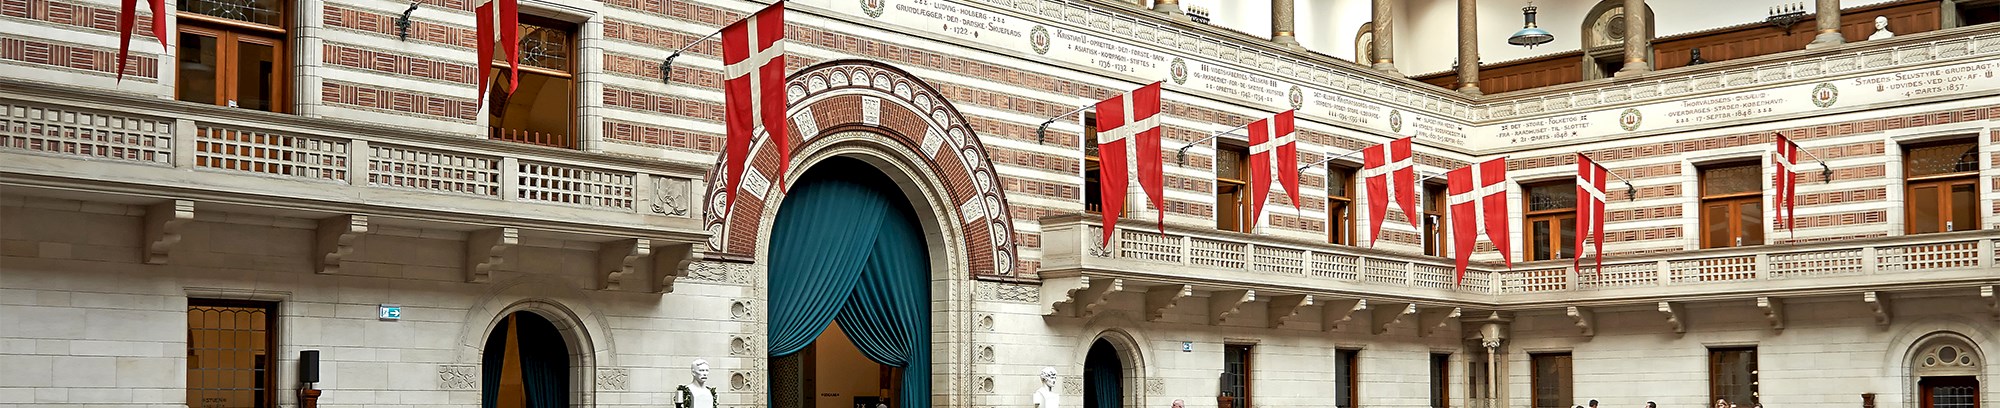 Københavns Rådhus indefra